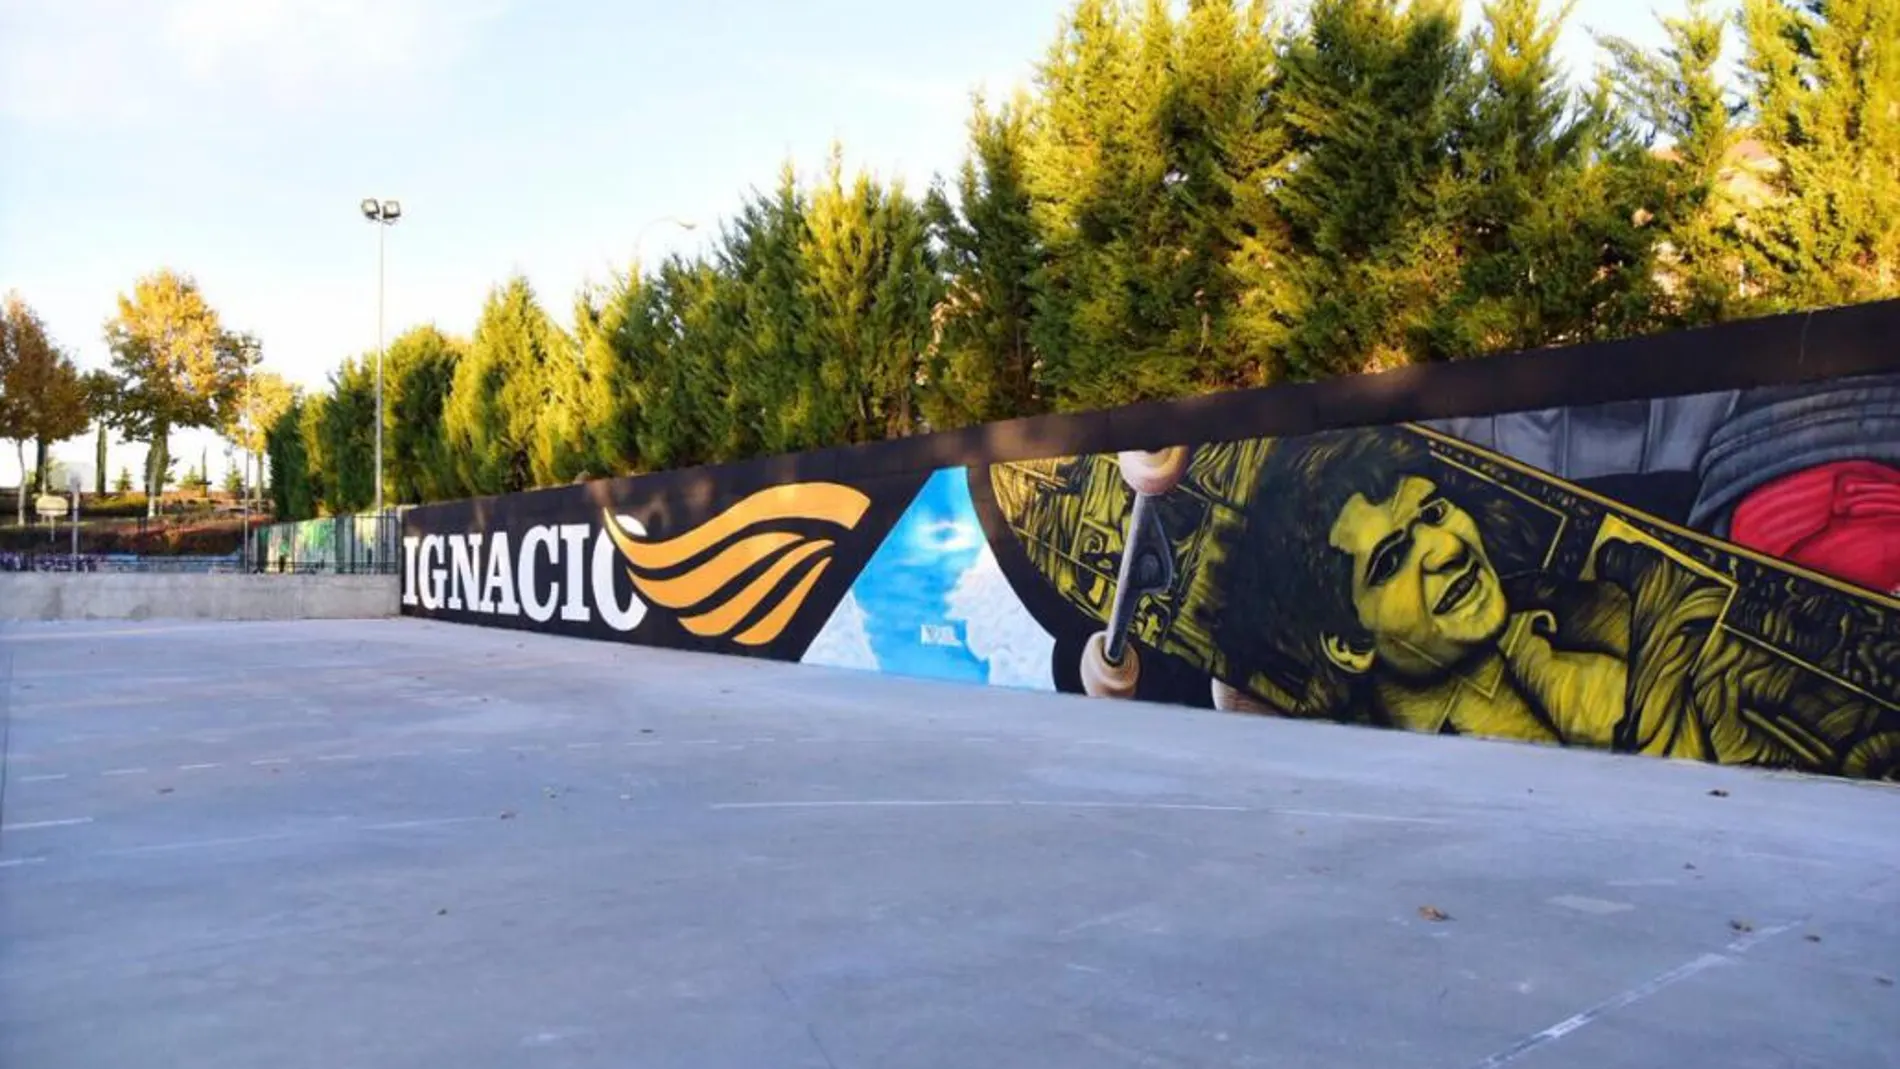 Así es el mural de homenaje a Ignacio Echeverría en Boadilla del Monte